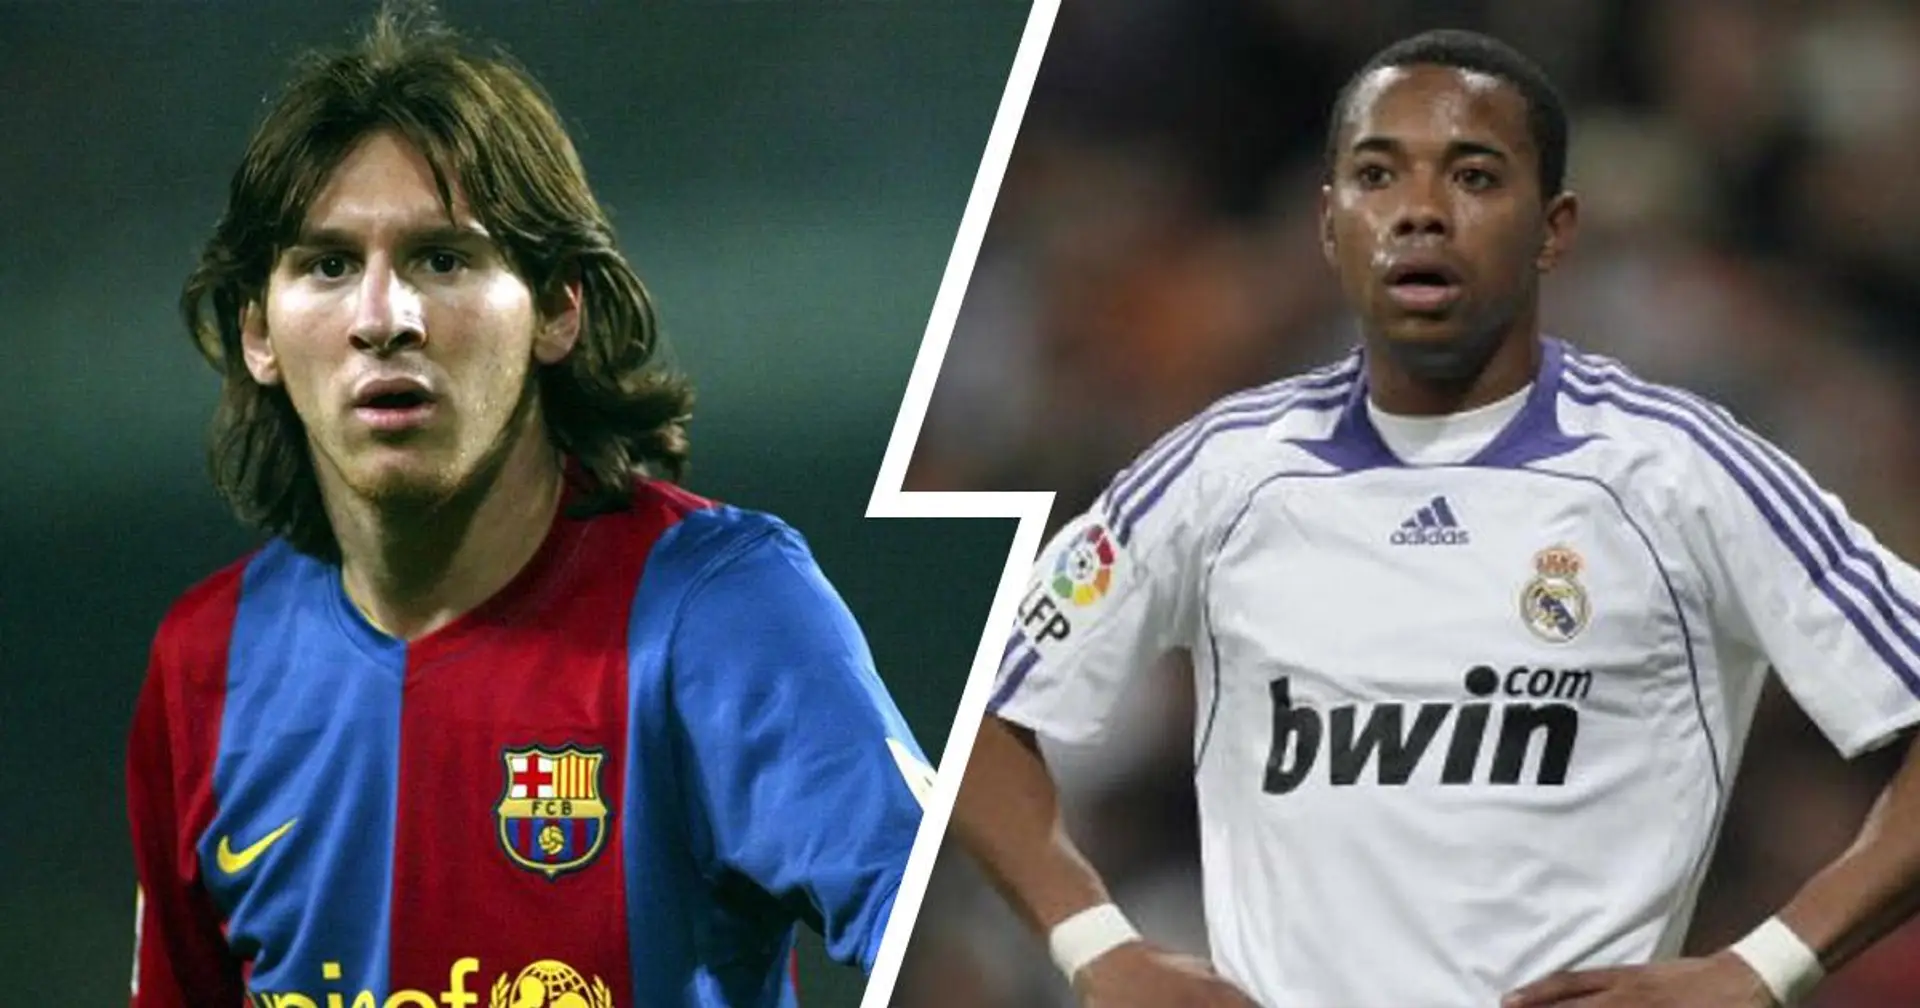 "Je doute que Messi puisse réussir au Barça'': comment les fans du Real Madrid ont essayé de prédire l'avenir en comparant Messi à Robinho en 2005